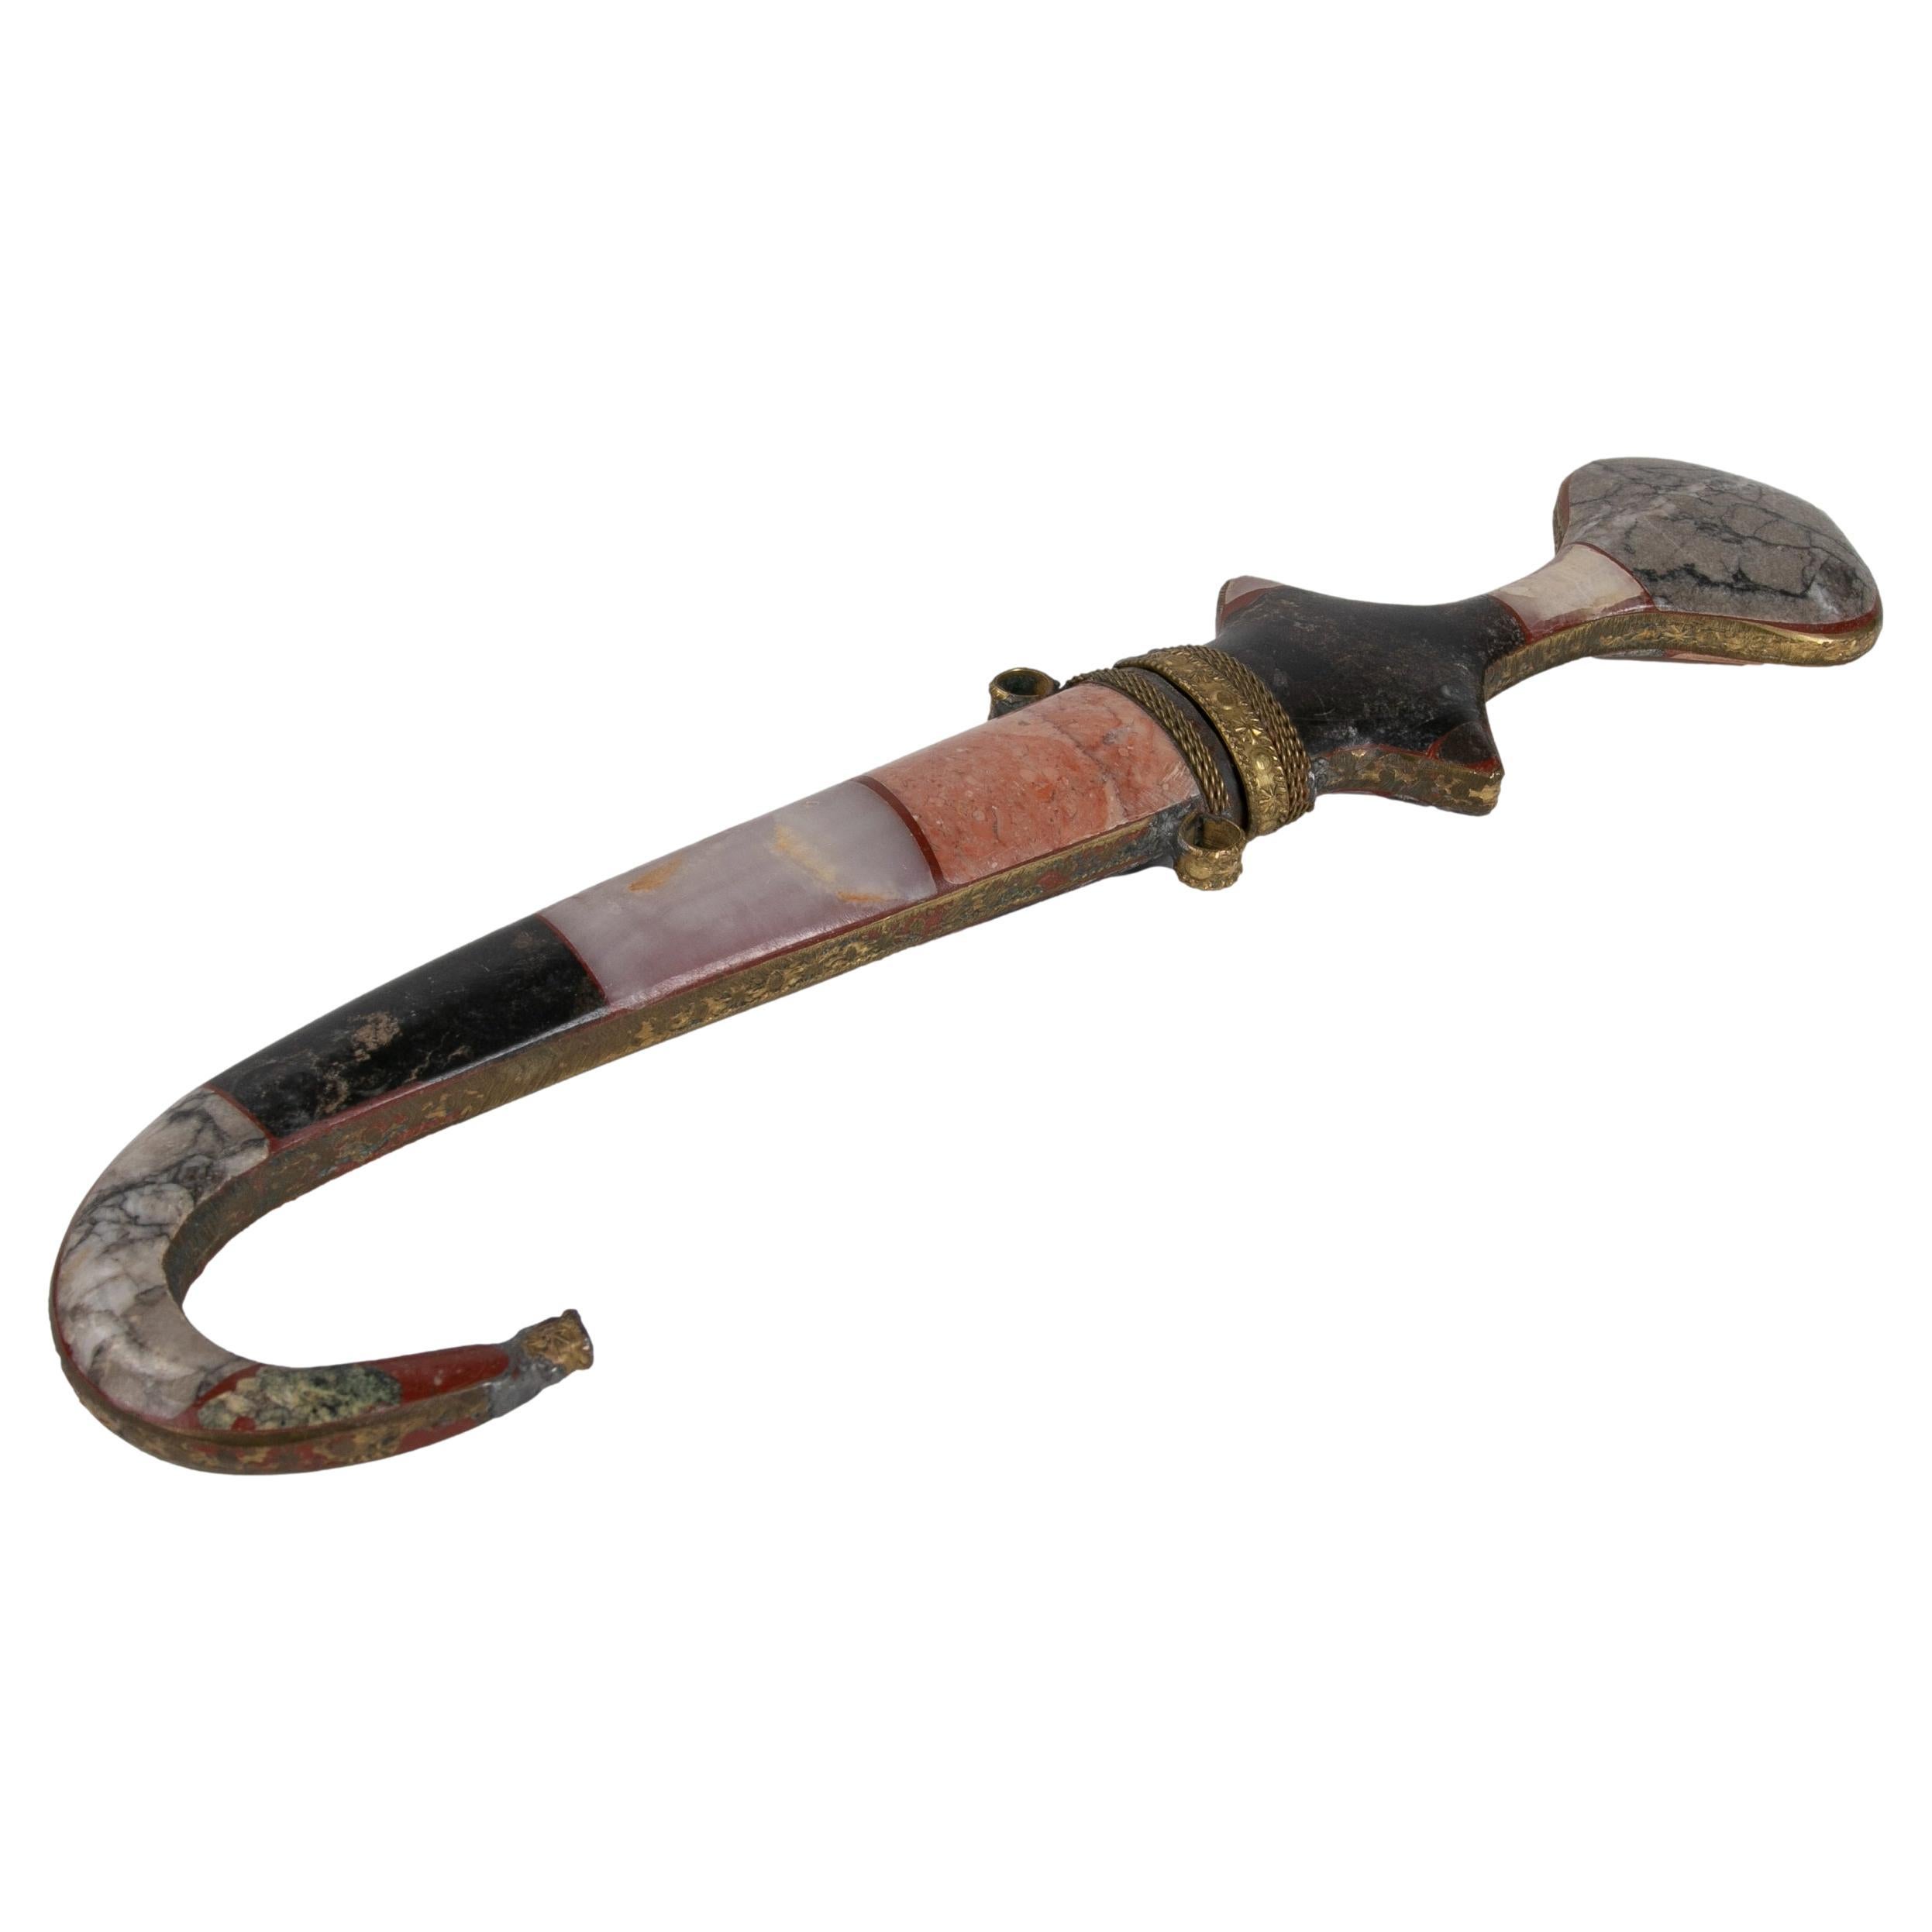 Dagger de style arabe des années 1980 fabriqué avec des pierres dures